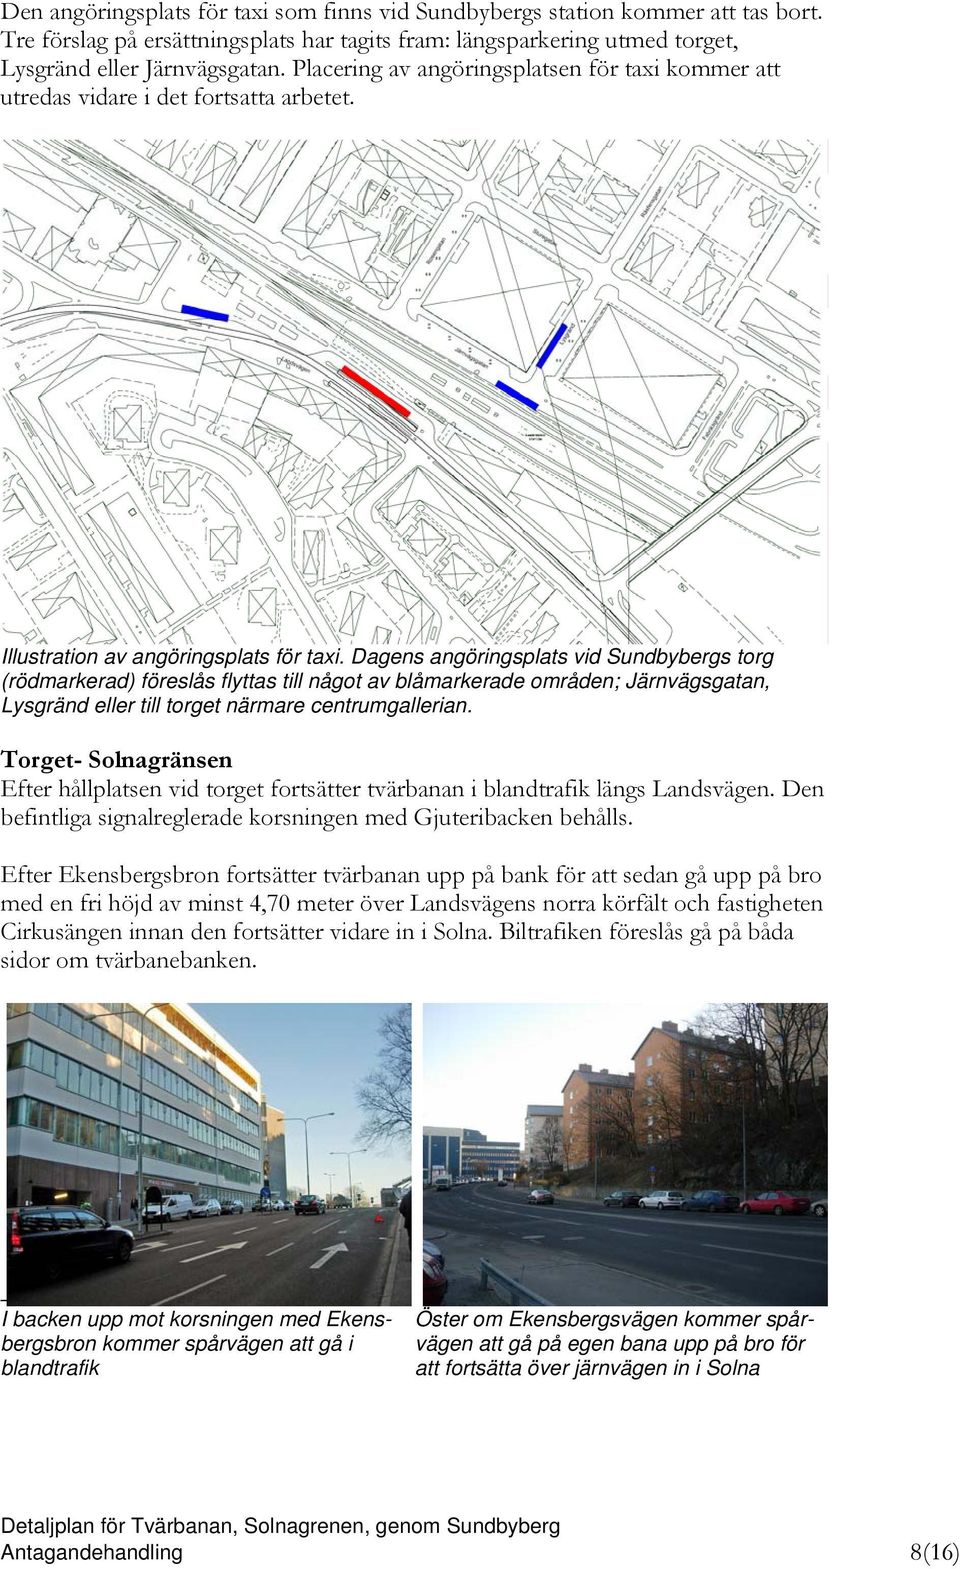 Dagens angöringsplats vid Sundbybergs torg (rödmarkerad) föreslås flyttas till något av blåmarkerade områden; Järnvägsgatan, Lysgränd eller till torget närmare centrumgallerian.